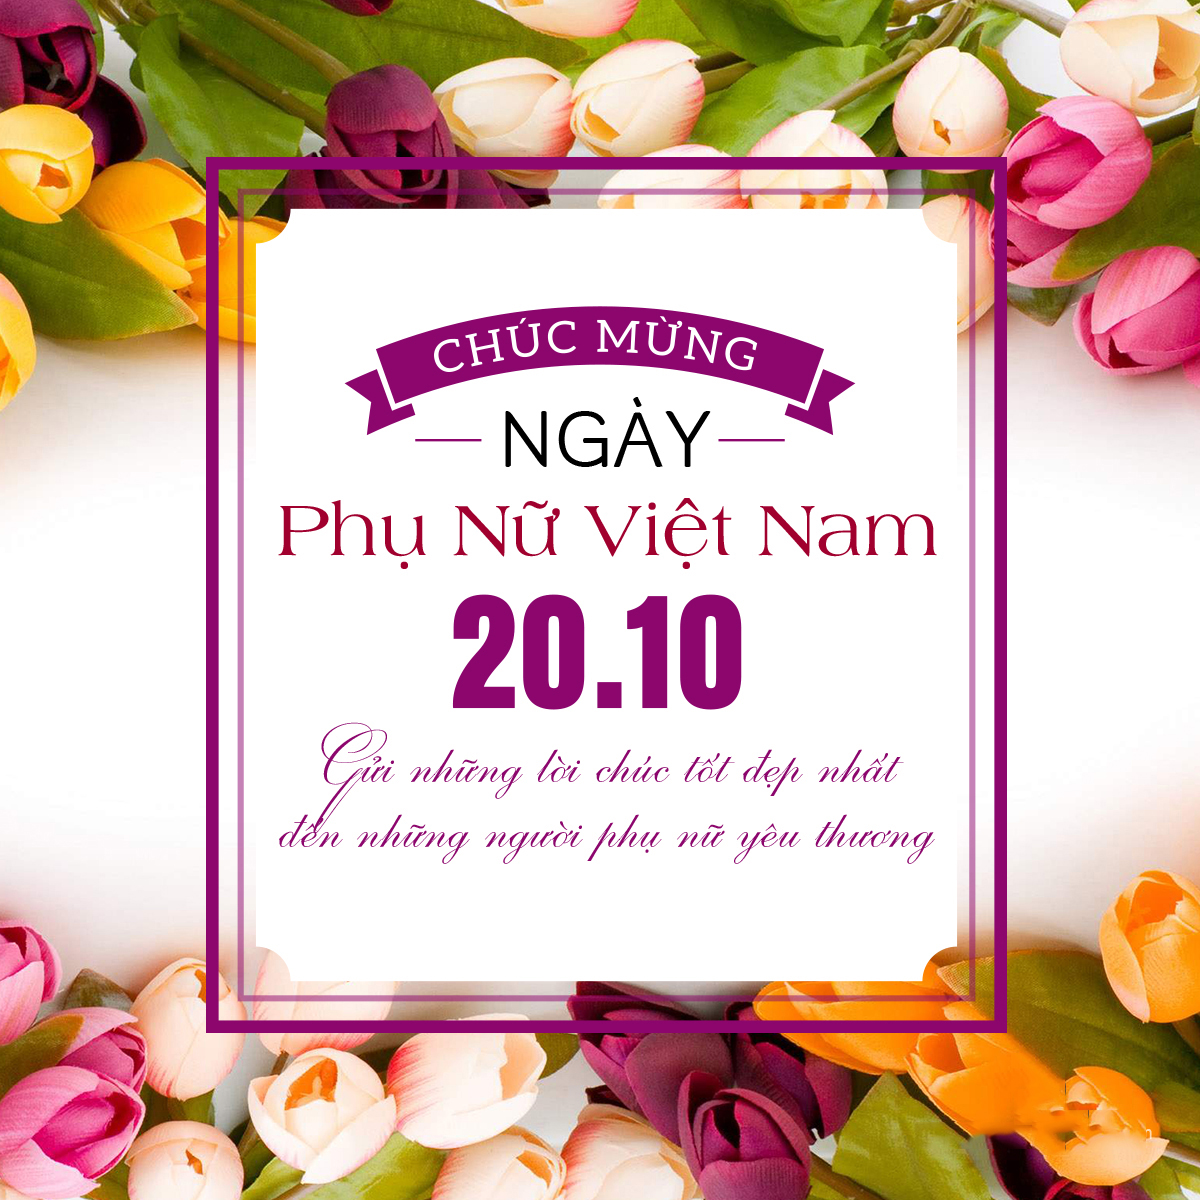 Tạo thiệp chúc mừng ngày phụ nữ Việt Nam 2010 đẹp nhất chúc người thân yêu   Ghép Ảnh Online